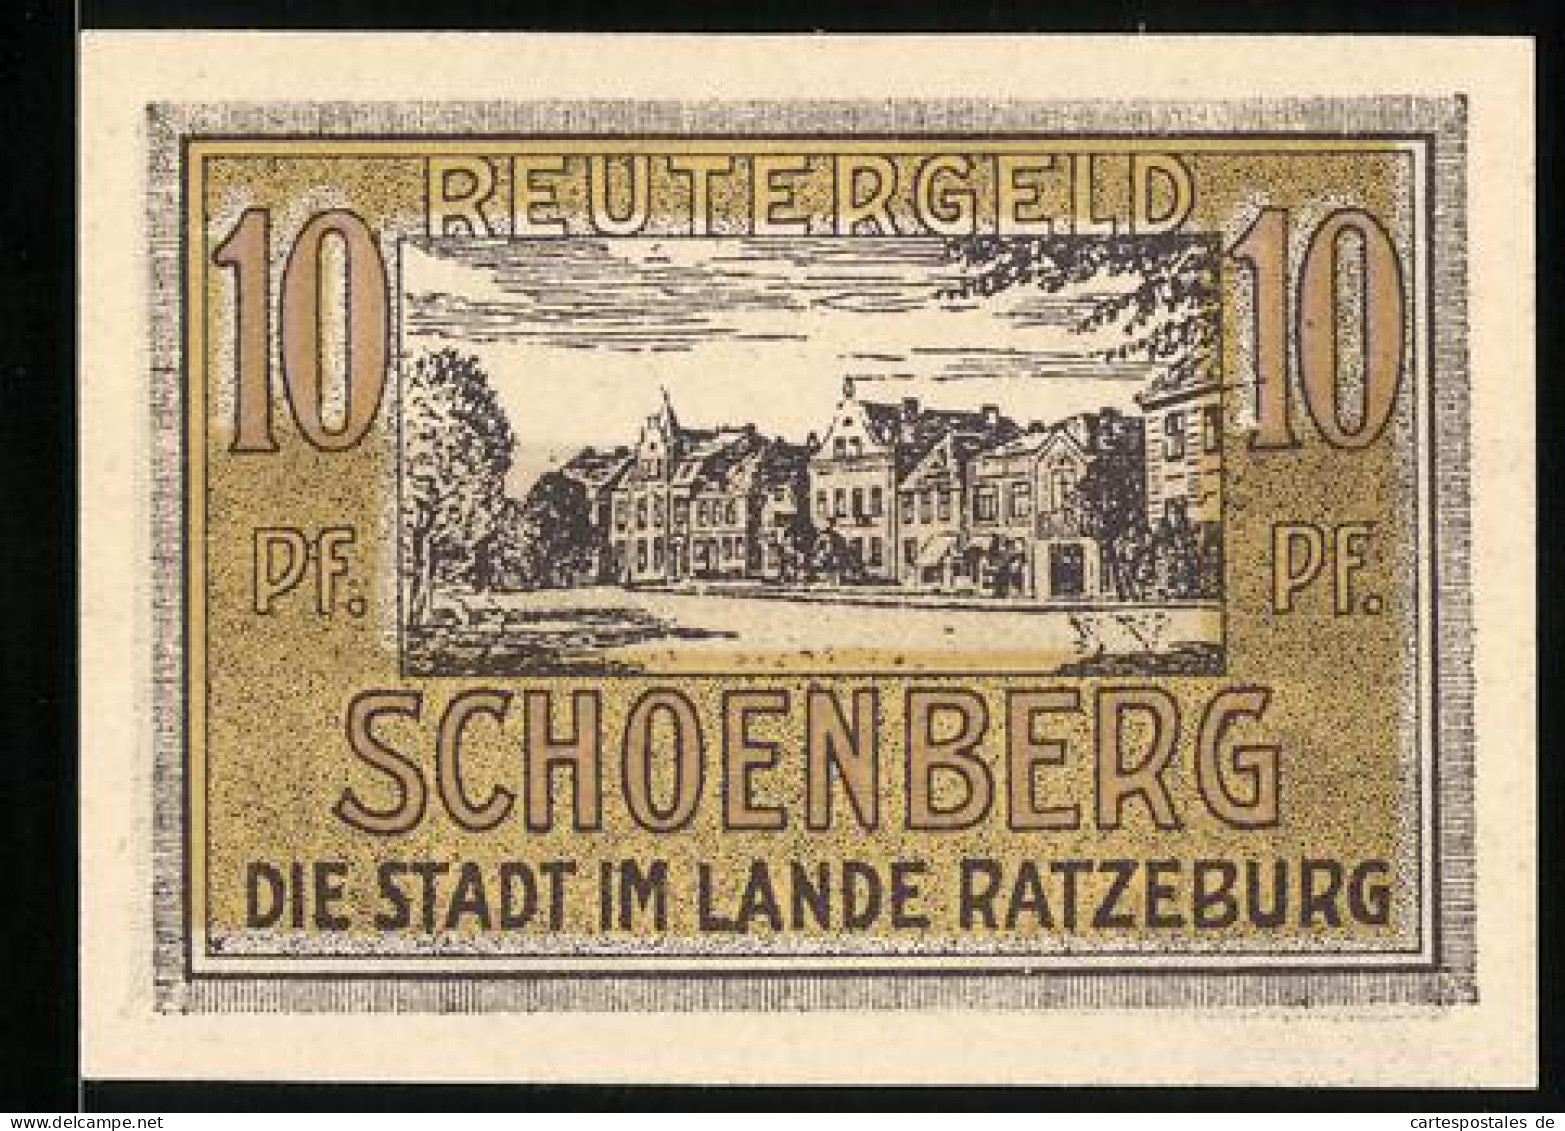 Notgeld Schönberg /Ratzeburg 1922, 10 Pfennig, Strassenpartie  - [11] Emisiones Locales